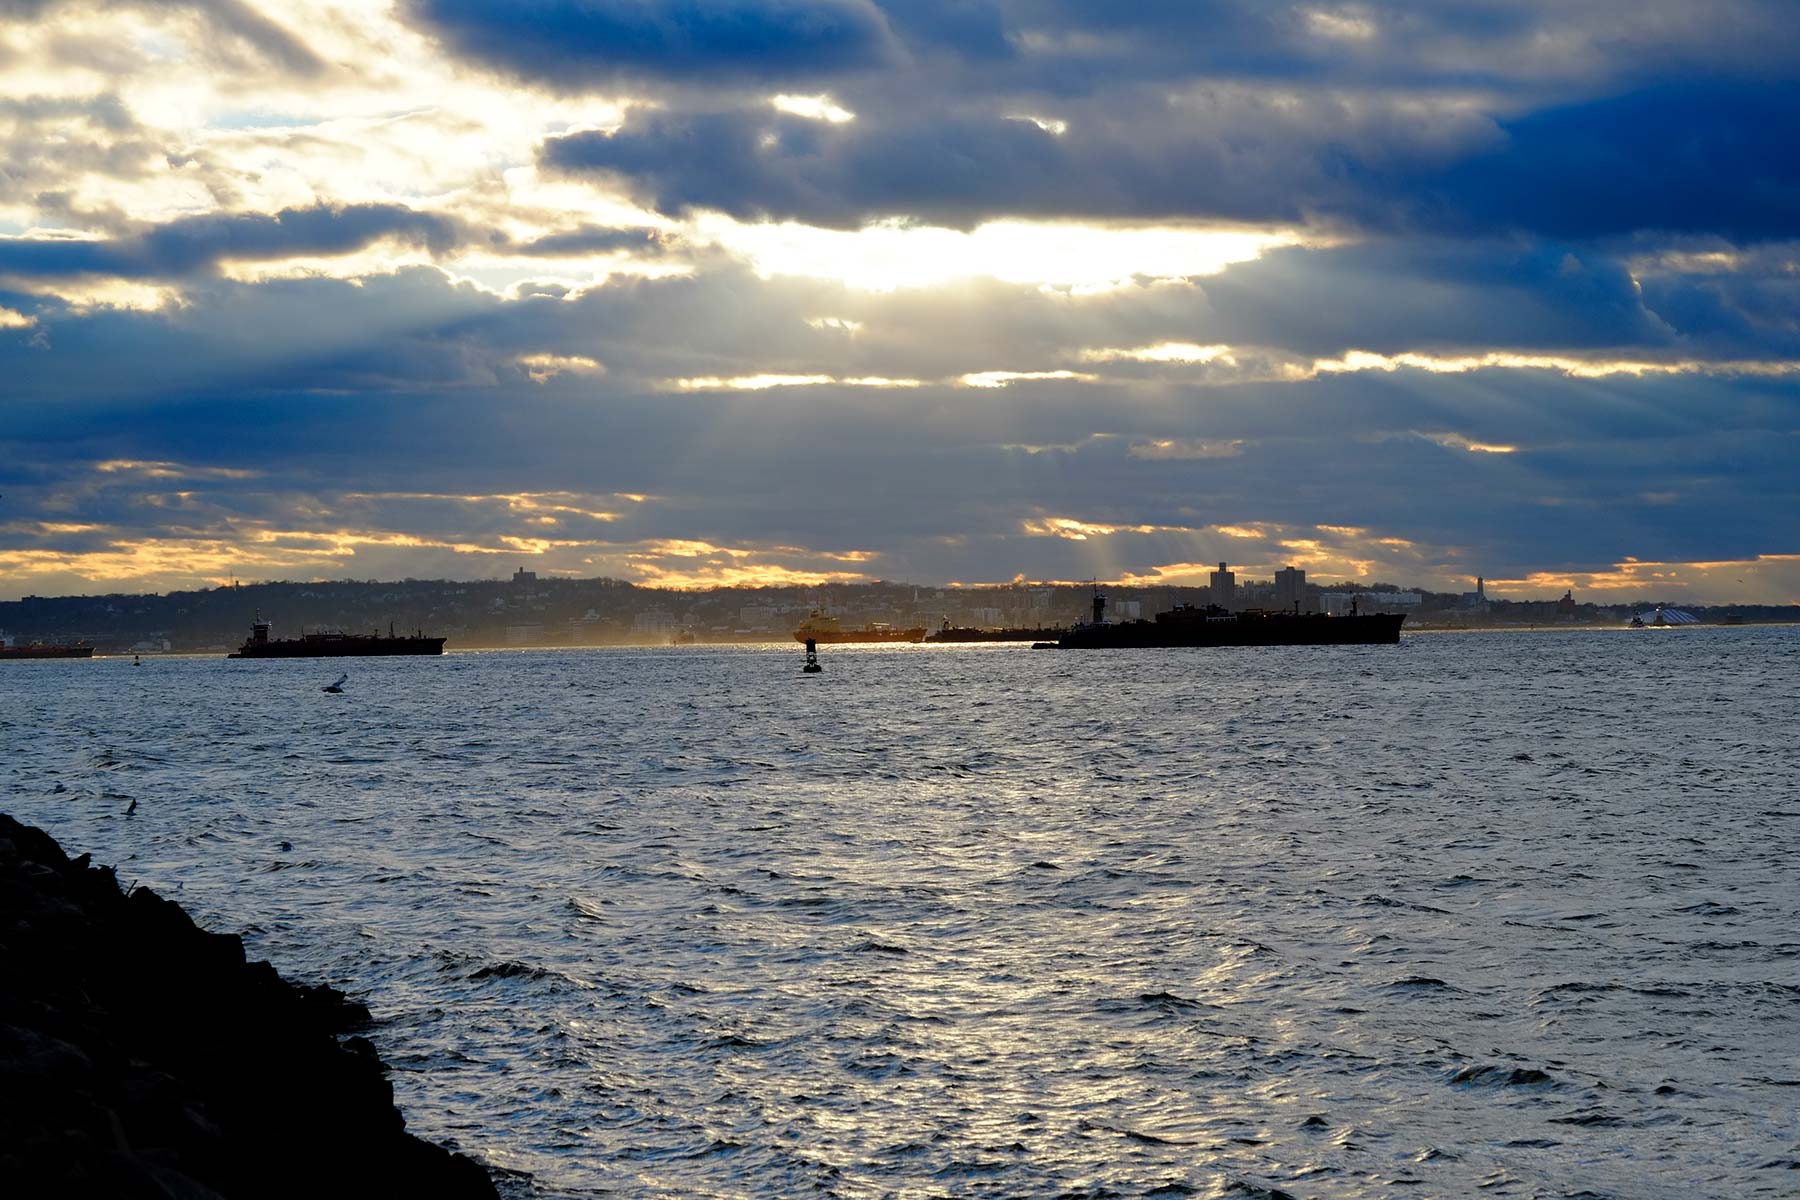 NY Harbor with blast of a sunbeam at dusk.